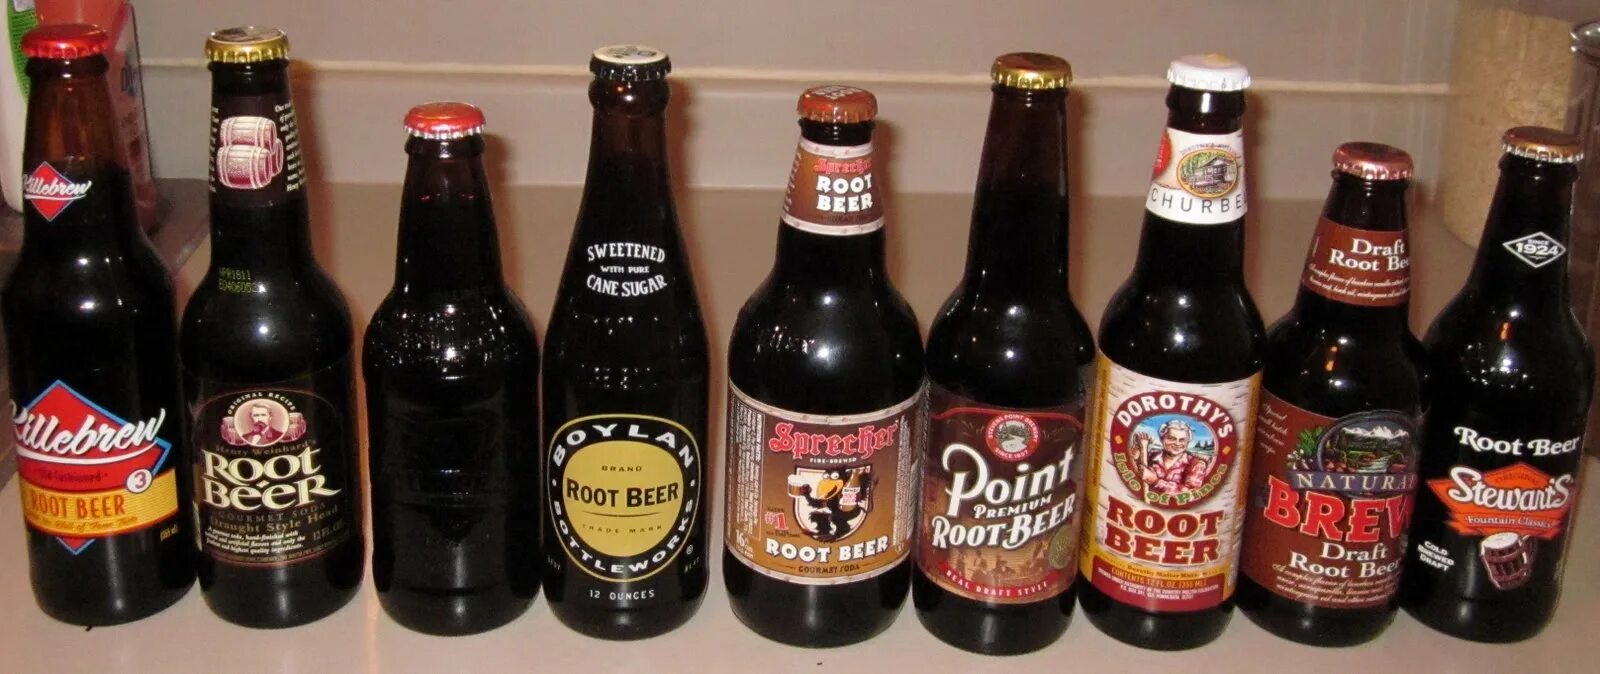 Корневое пиво. Рут бир. Root Beer в бутылке. Корневое пиво Россия.